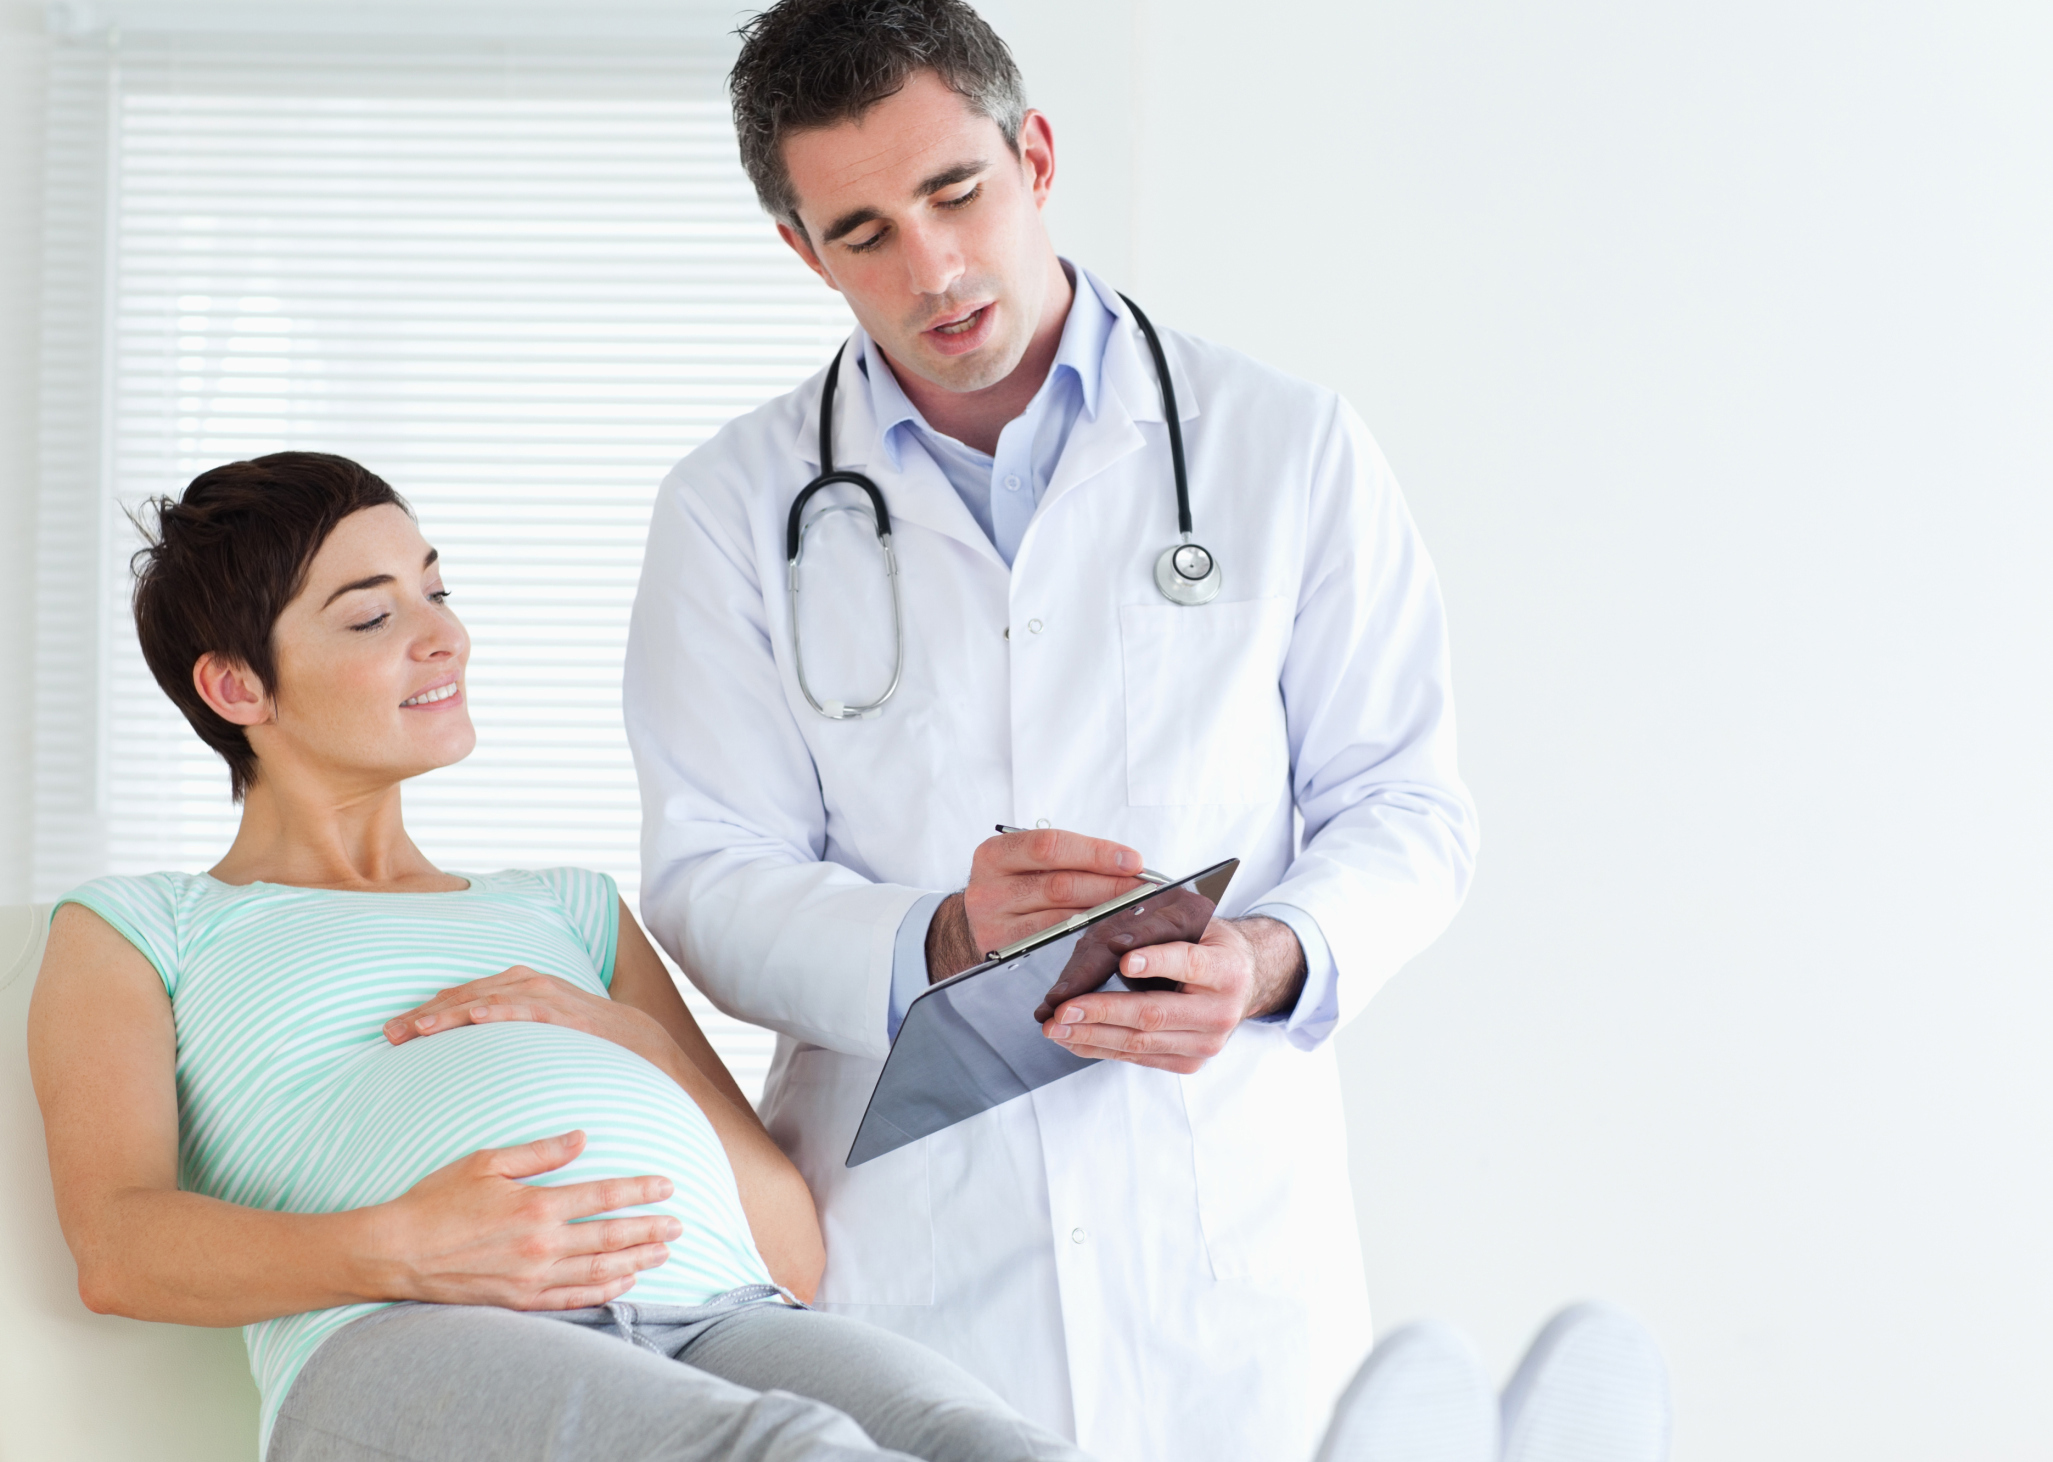 Преждевременная отслойка плаценты (ПОТП) – осложнение родовой деятельности, связанное с несвоевременным отделением нормально расположенной плаценты (ПЦ) во время беременности или во время родоразрешения.